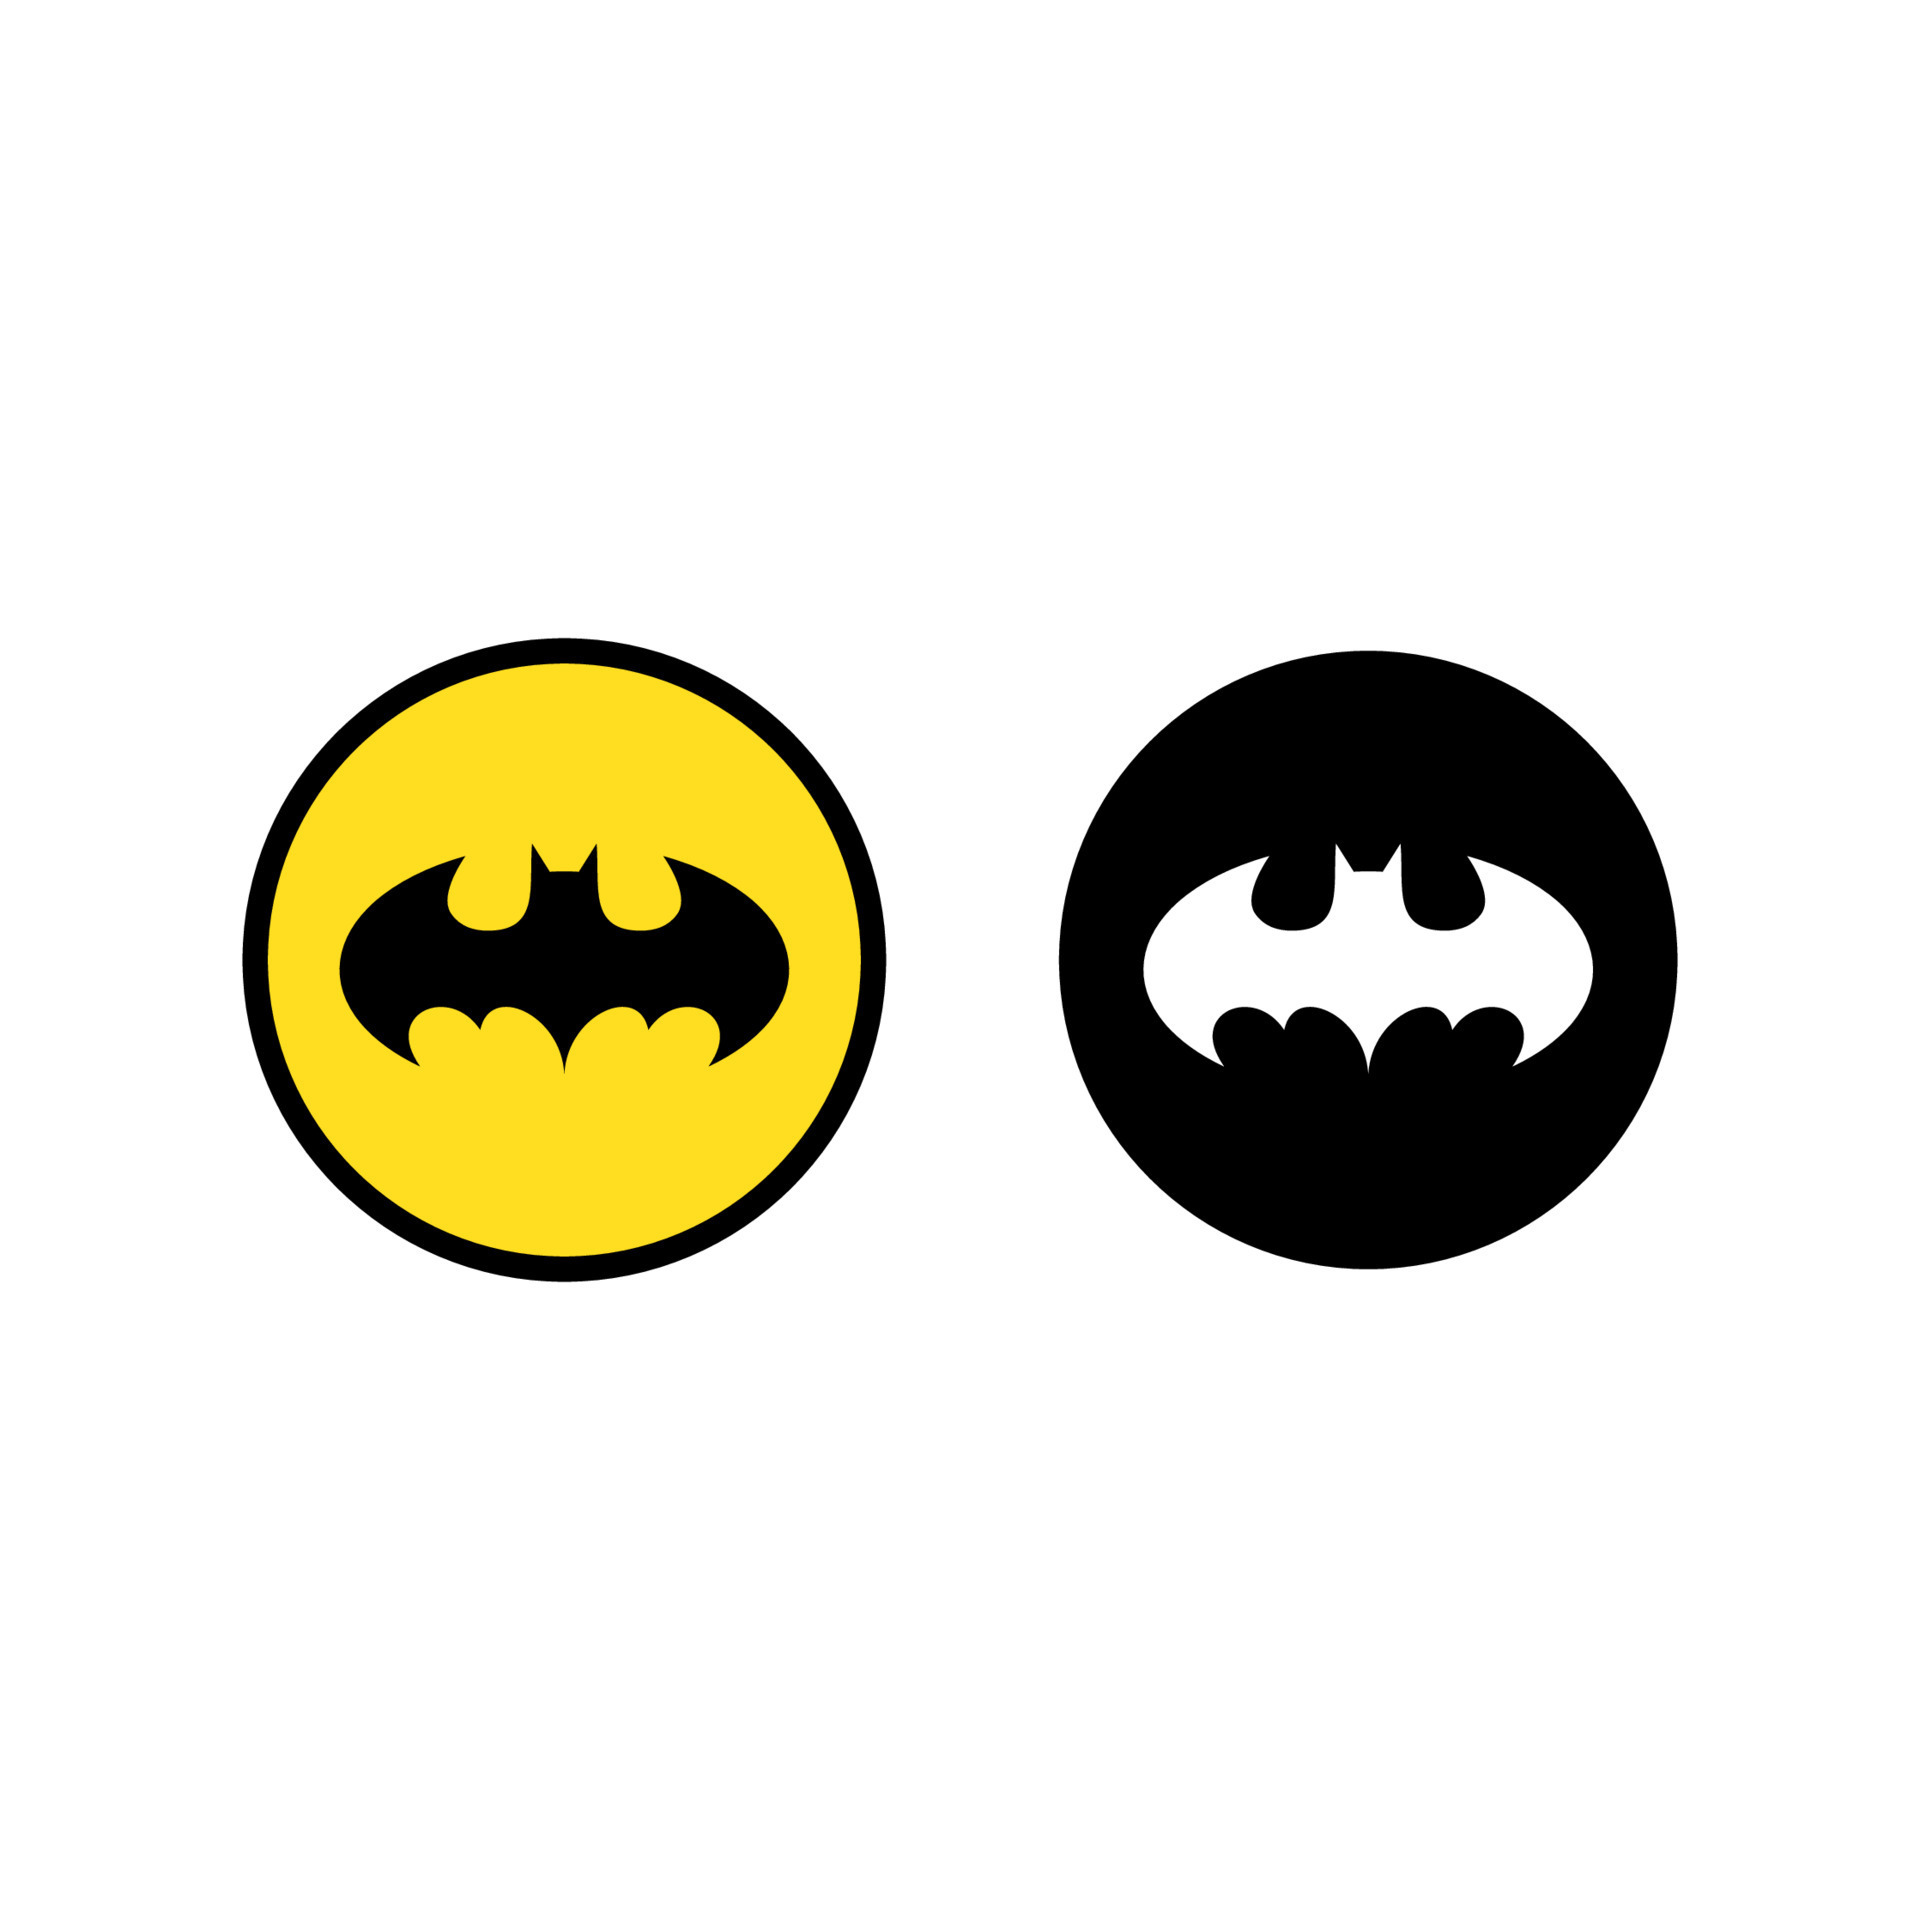 batman logo vector, batman icon free vector 19136471 Vector Art at Vecteezy